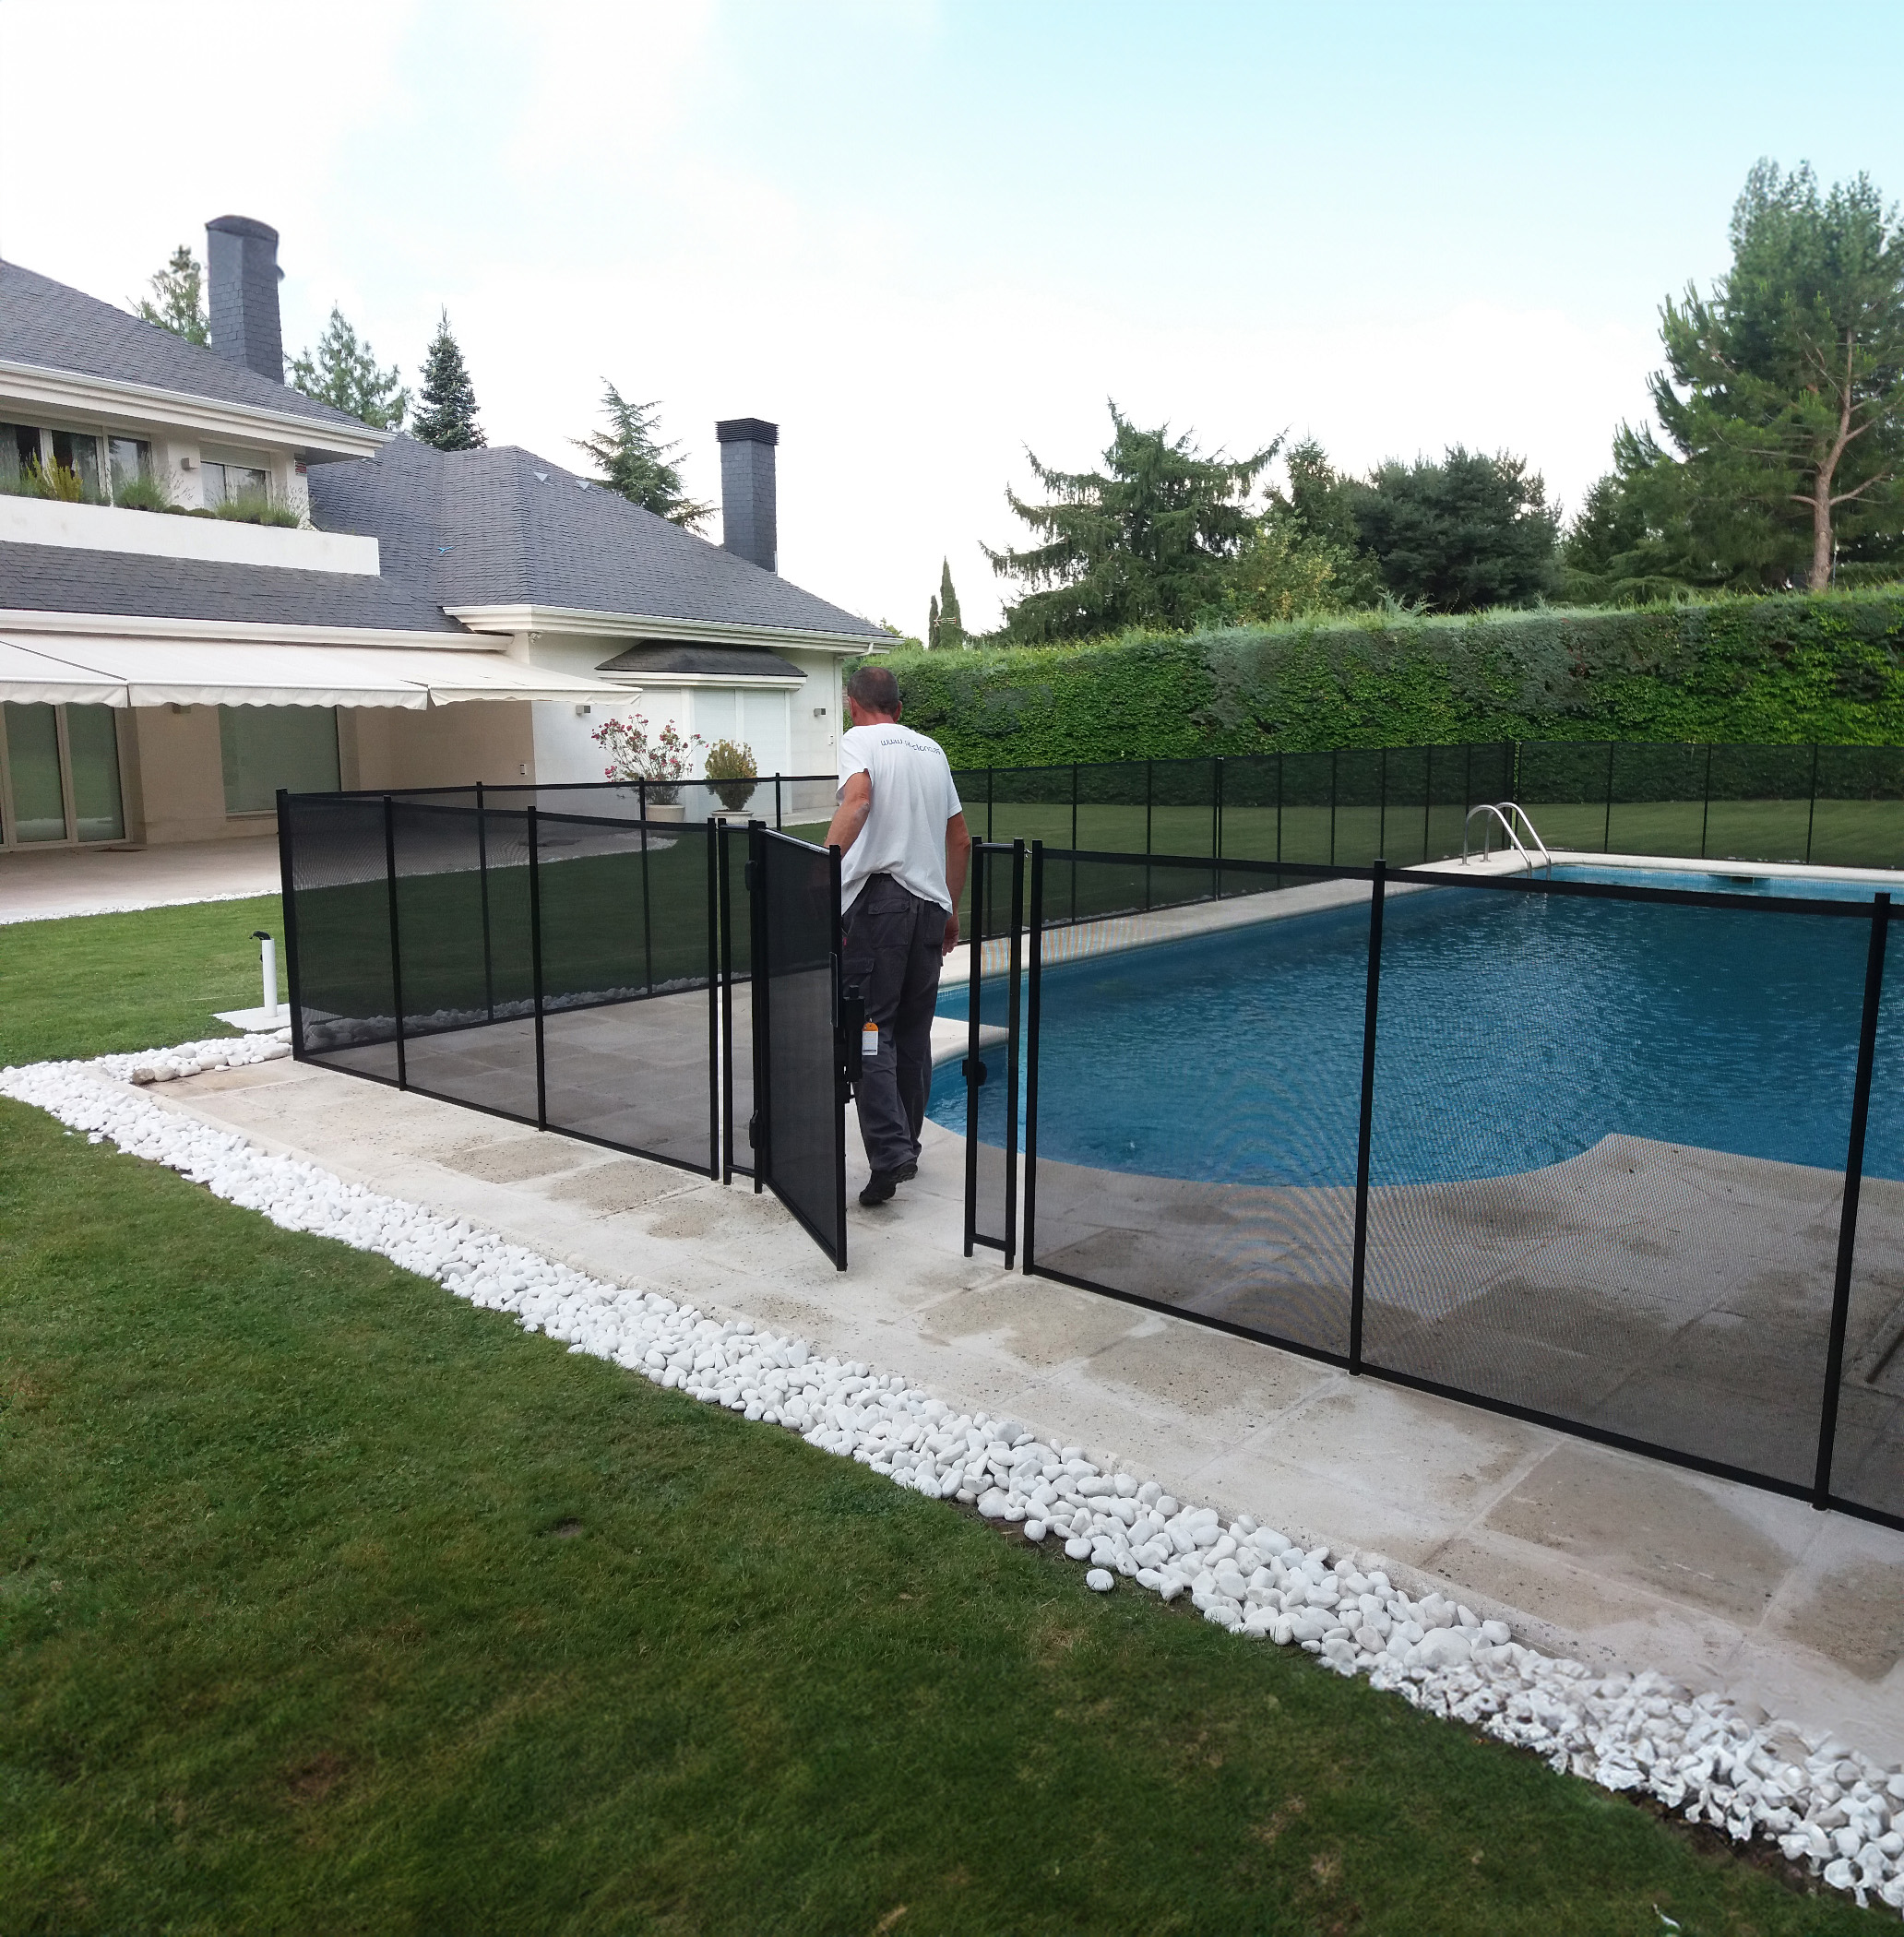 Módulo de 4 m de valla de seguridad piscina 16 mm negro